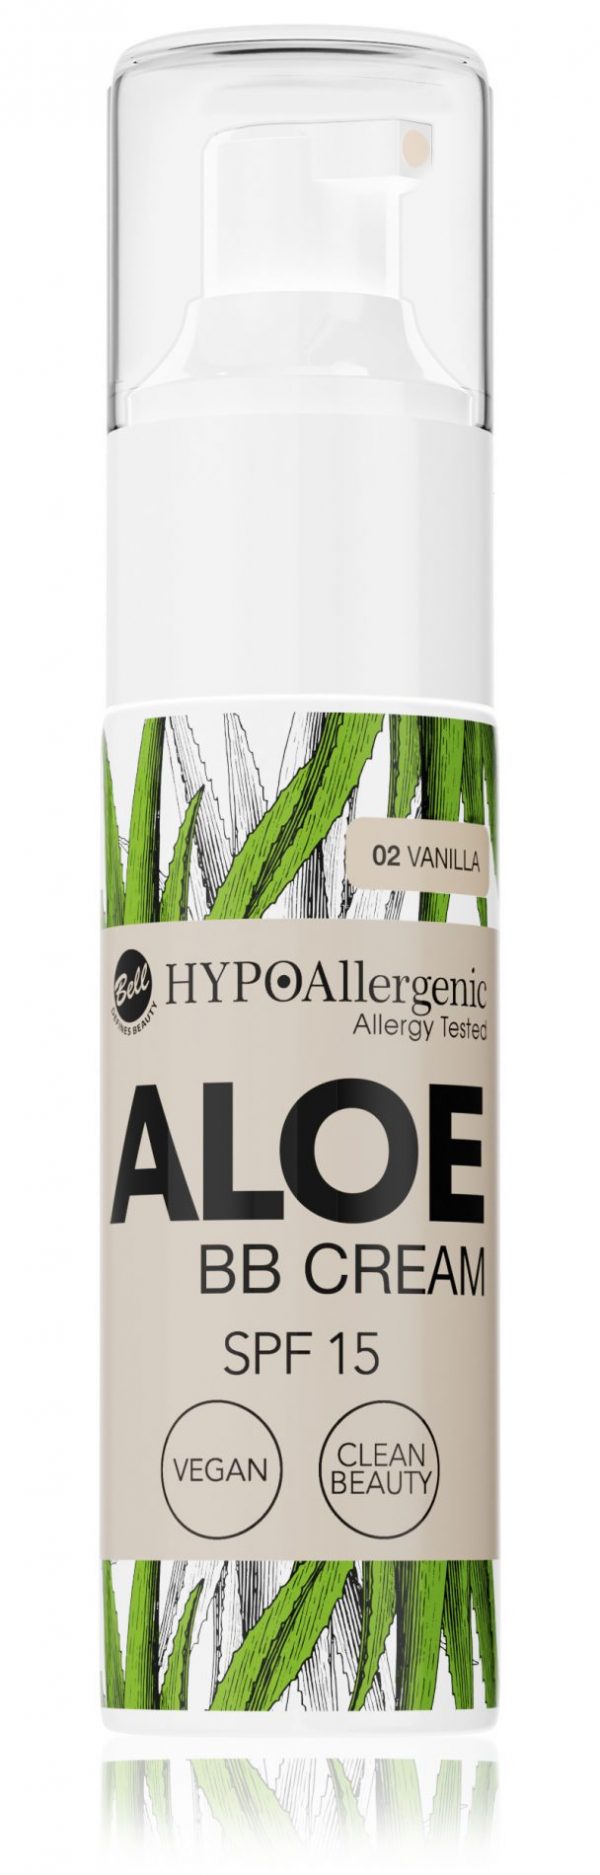 HYPOAllergenic ALOE BB Cream SPF 15 02 Vanilla